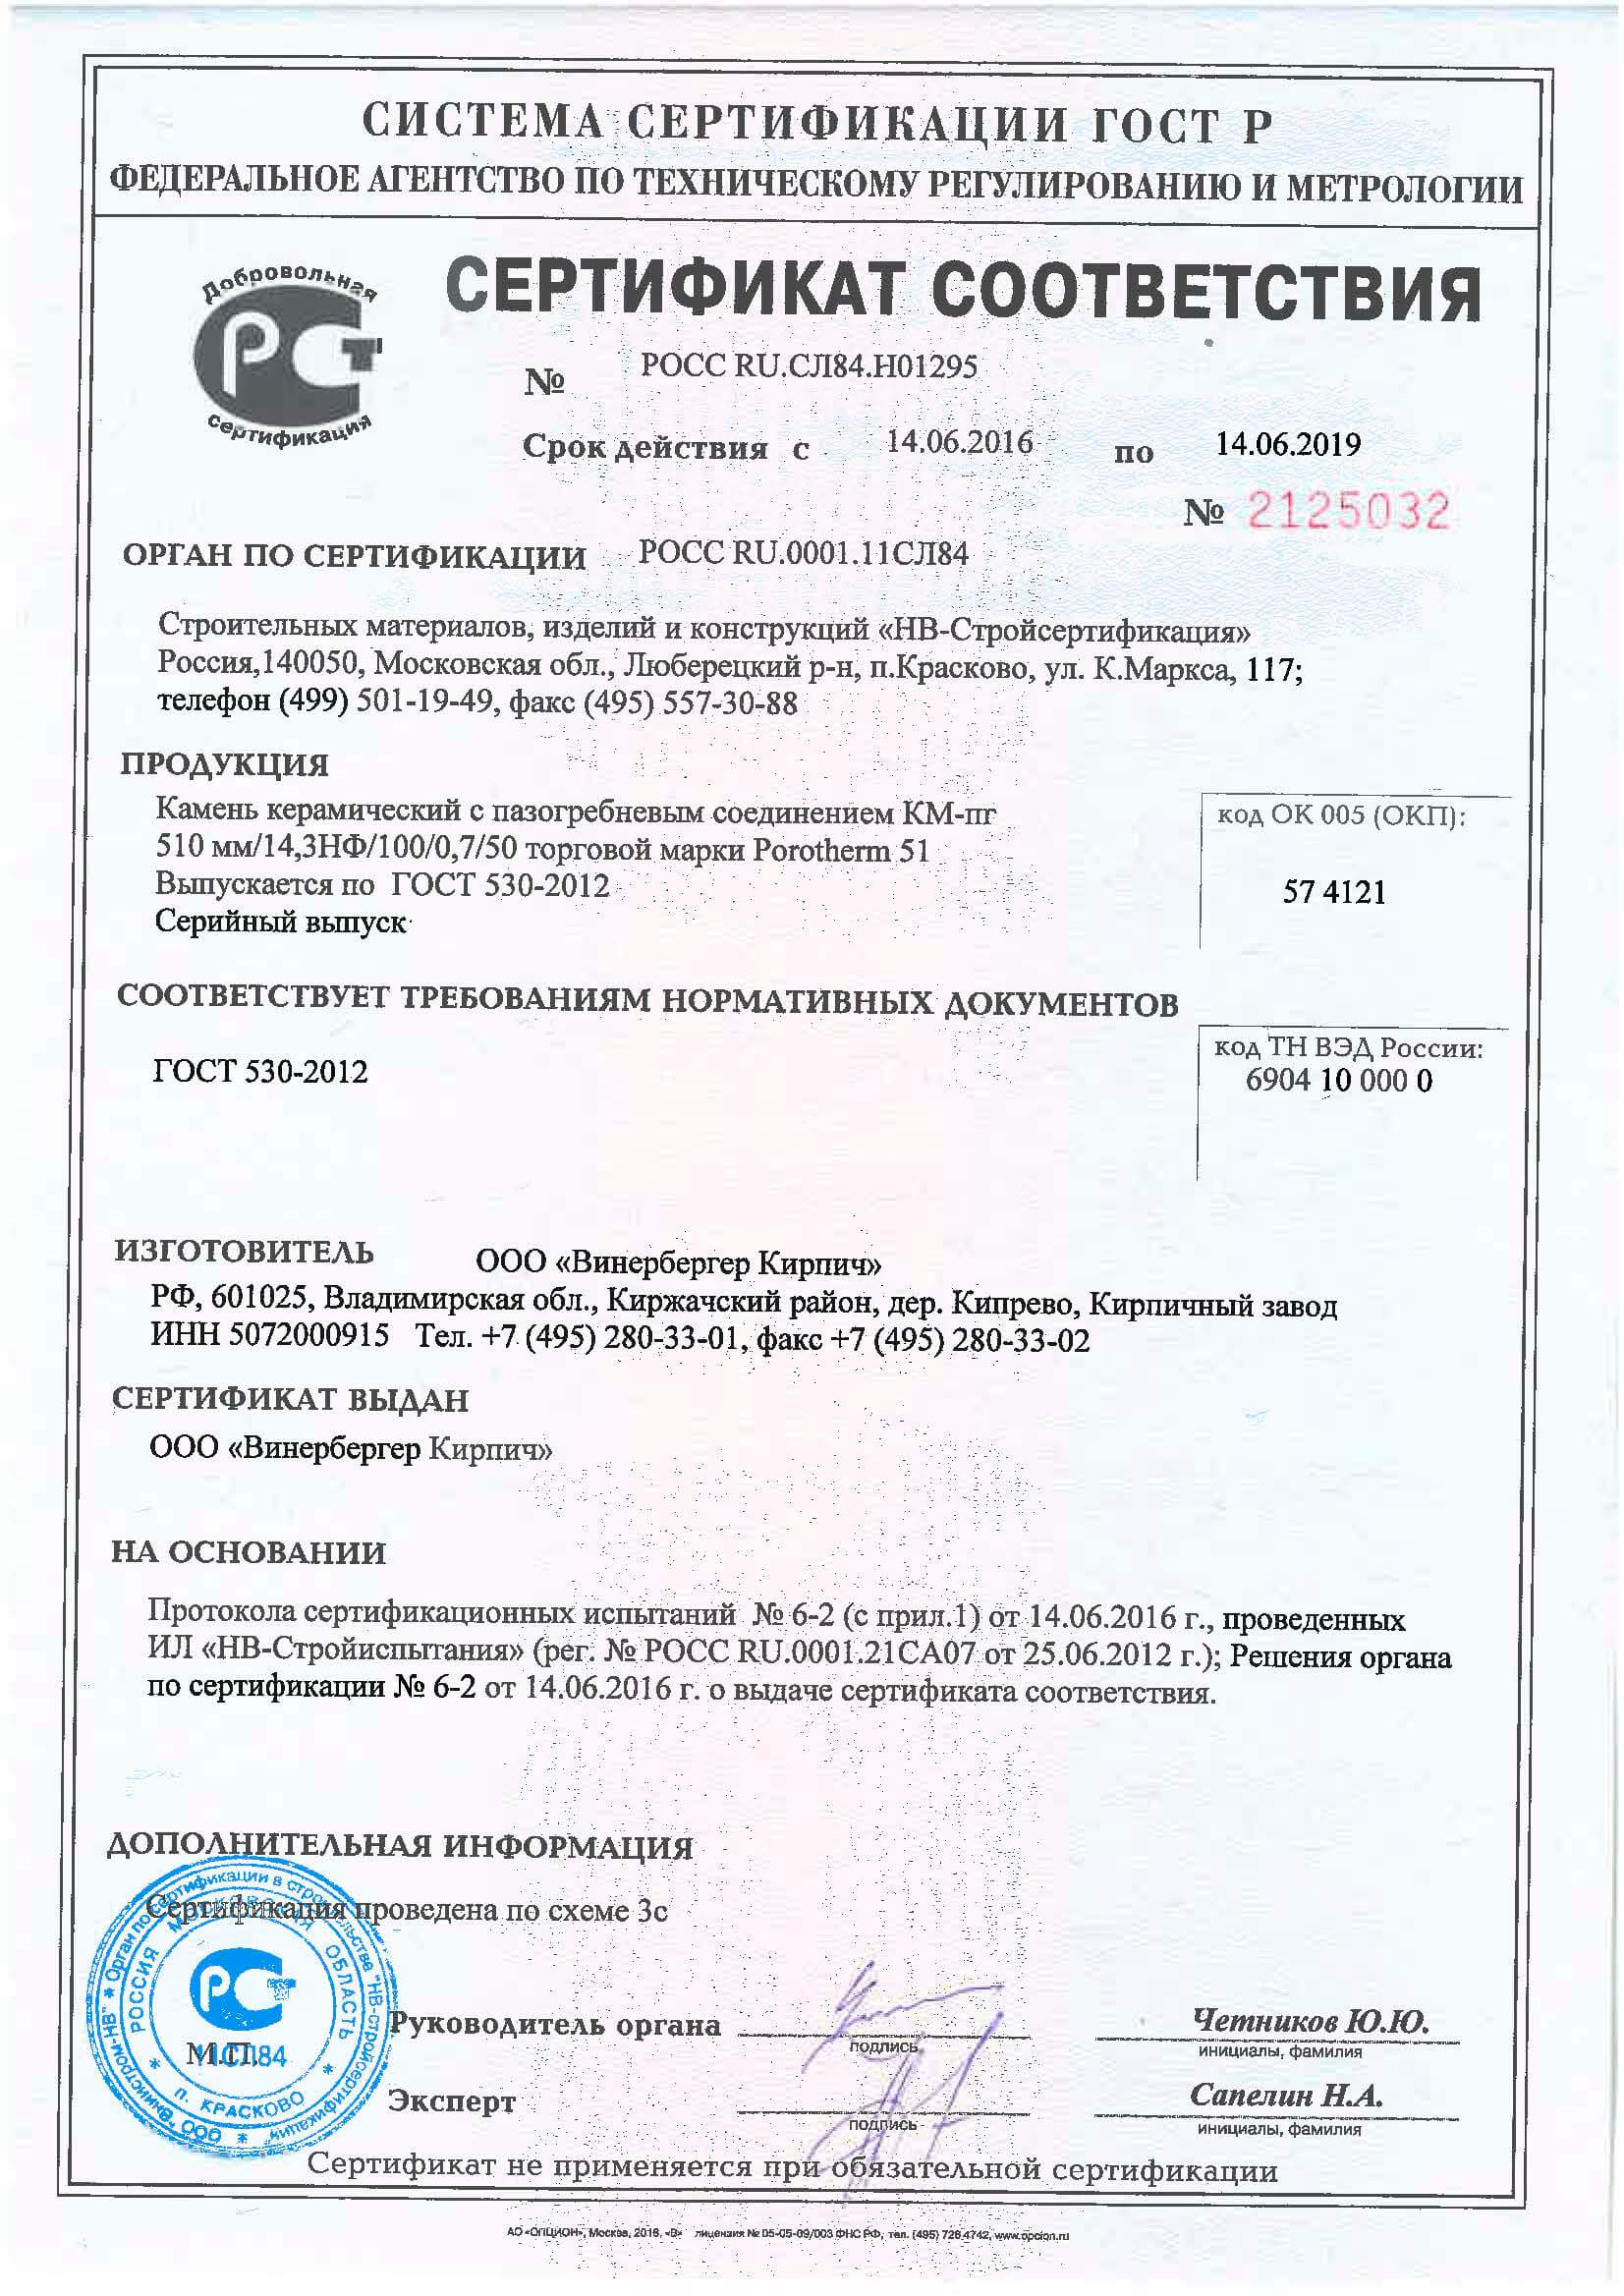 Сертификат соответствия ГОСТ 530-2012 на Porotherm 38 GL